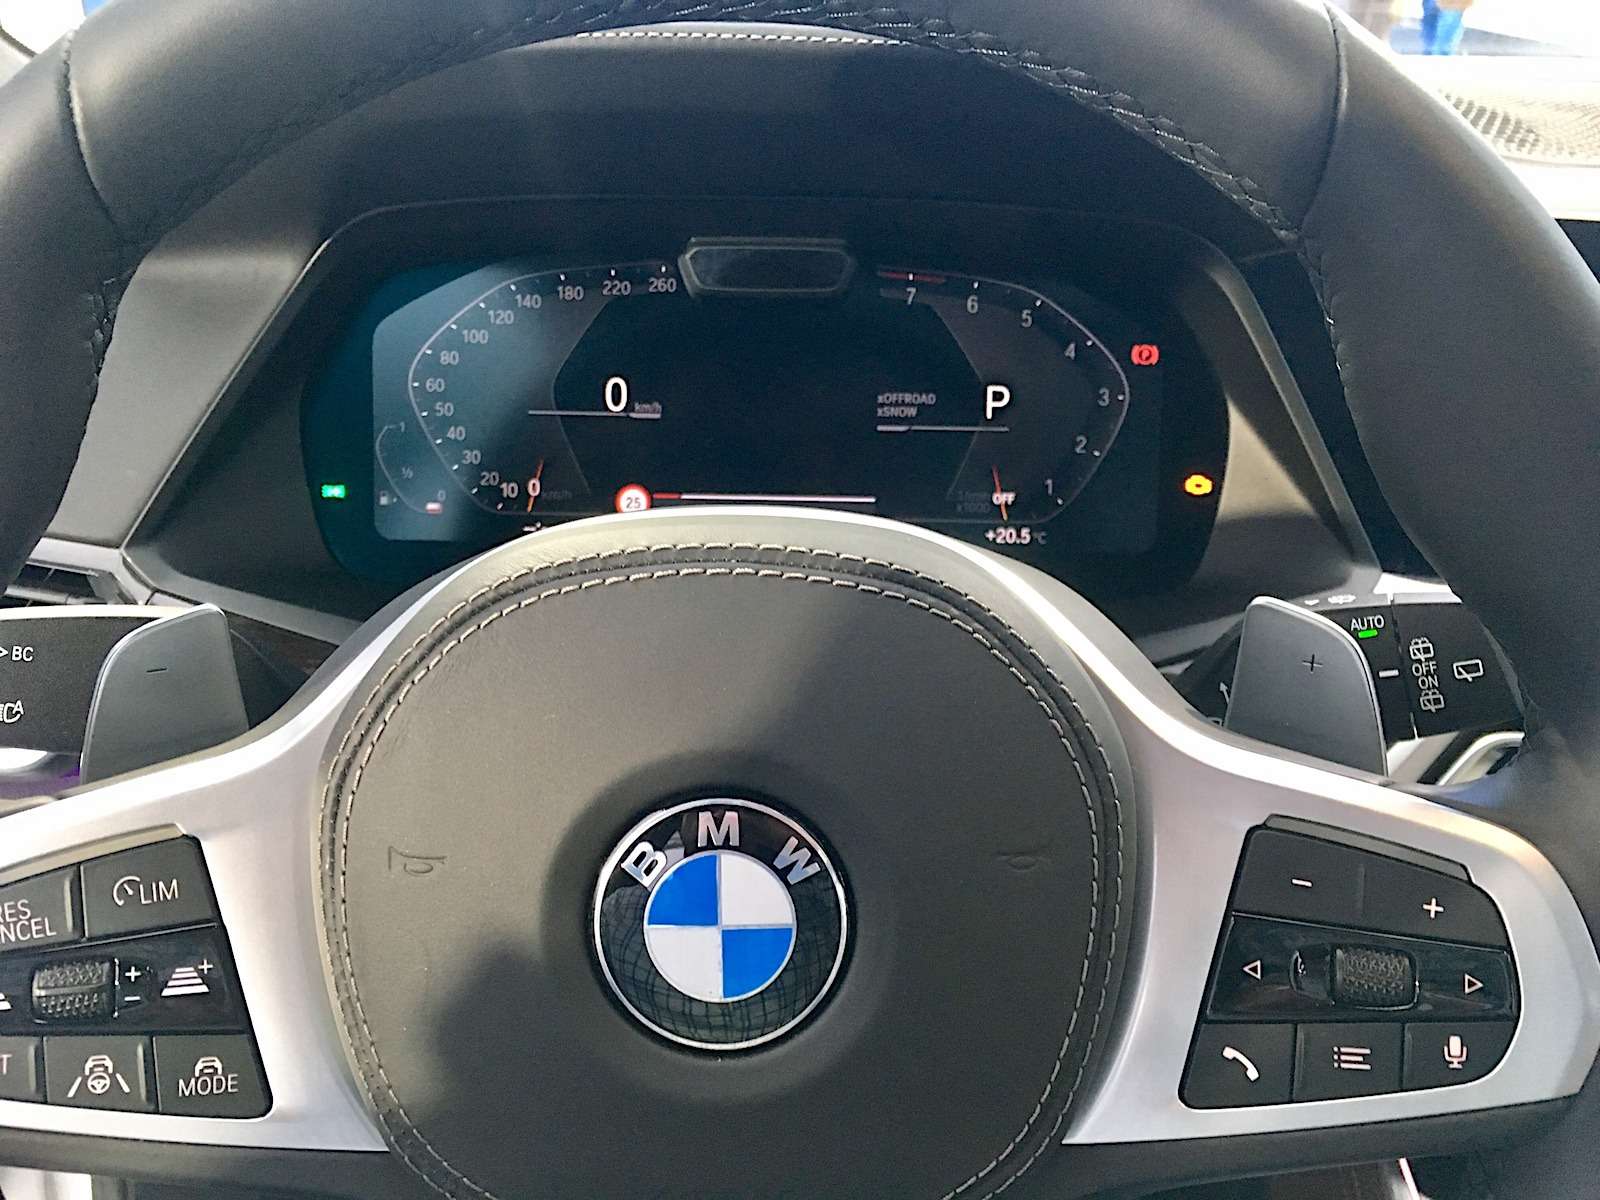 Абсолютно новый BMW X5 всплыл в Москве. Задолго до официальной премьеры! — фото 889846